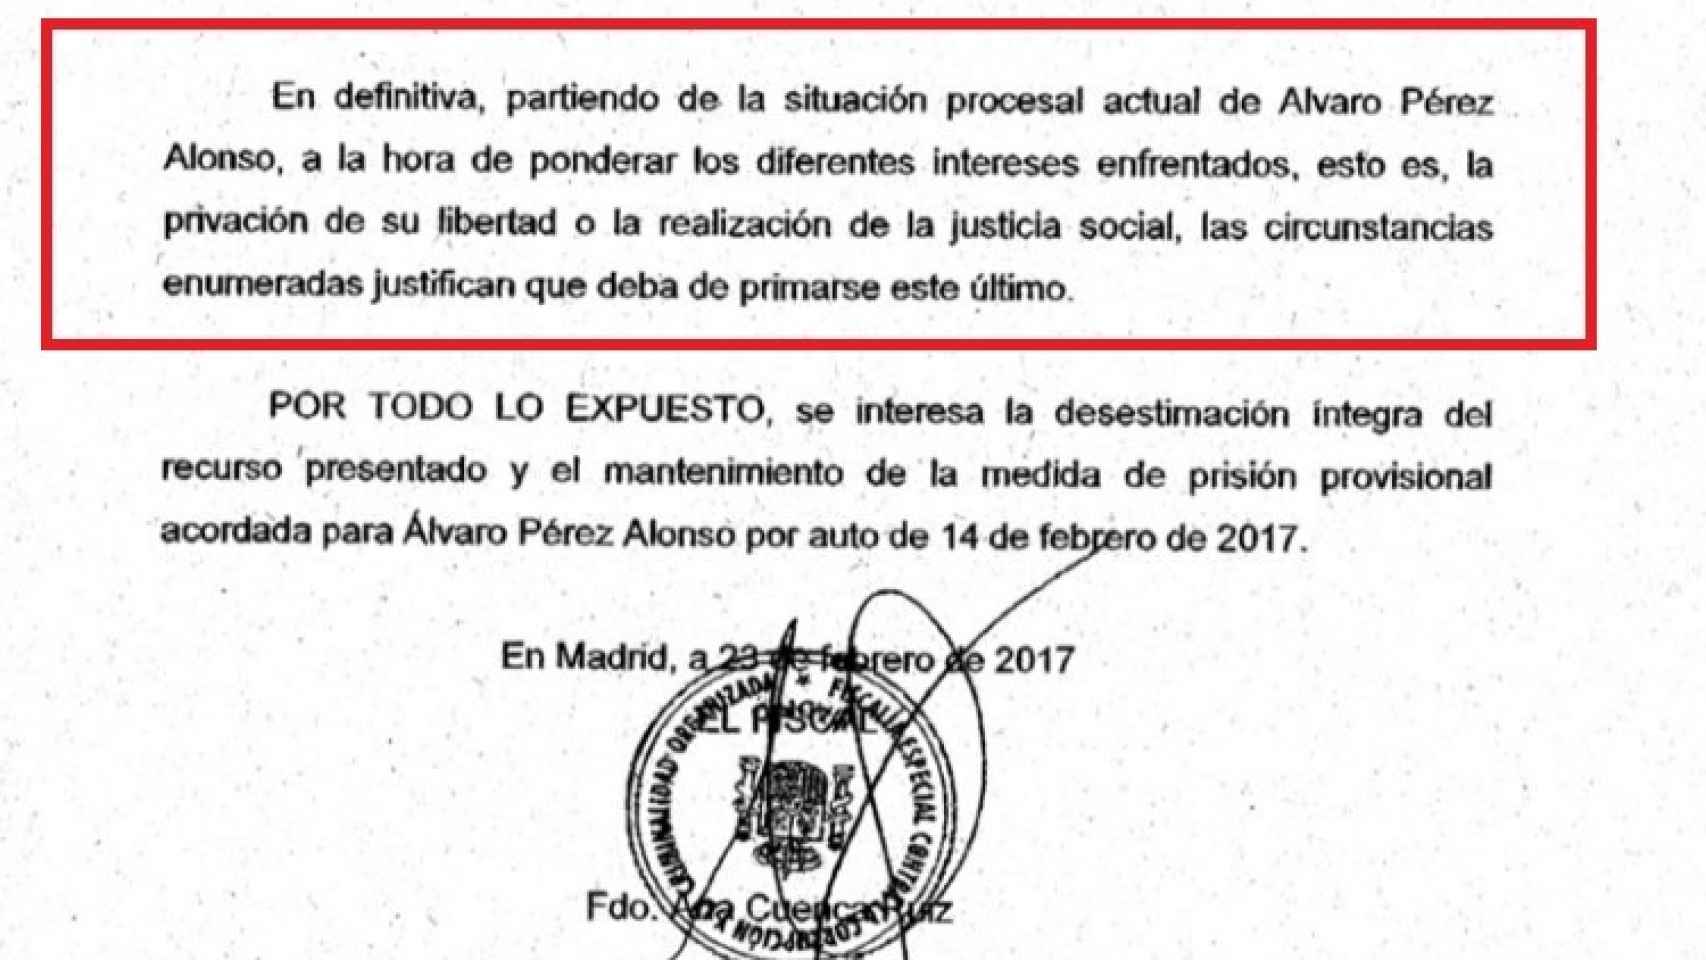 El escrito de Fiscalía alegando la justicia social contra Álvaro Pérez.